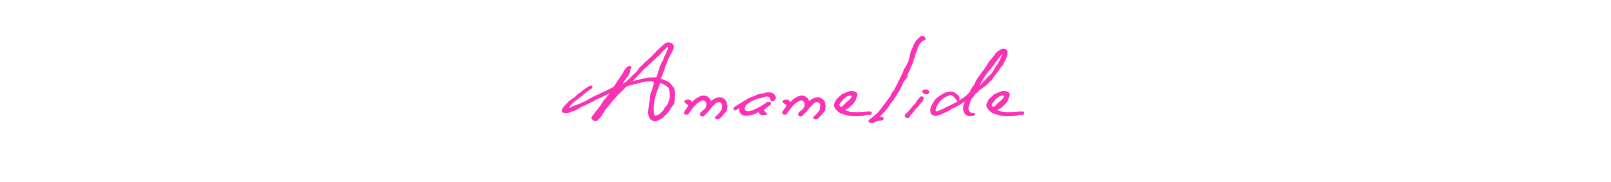 Amamelide - logo